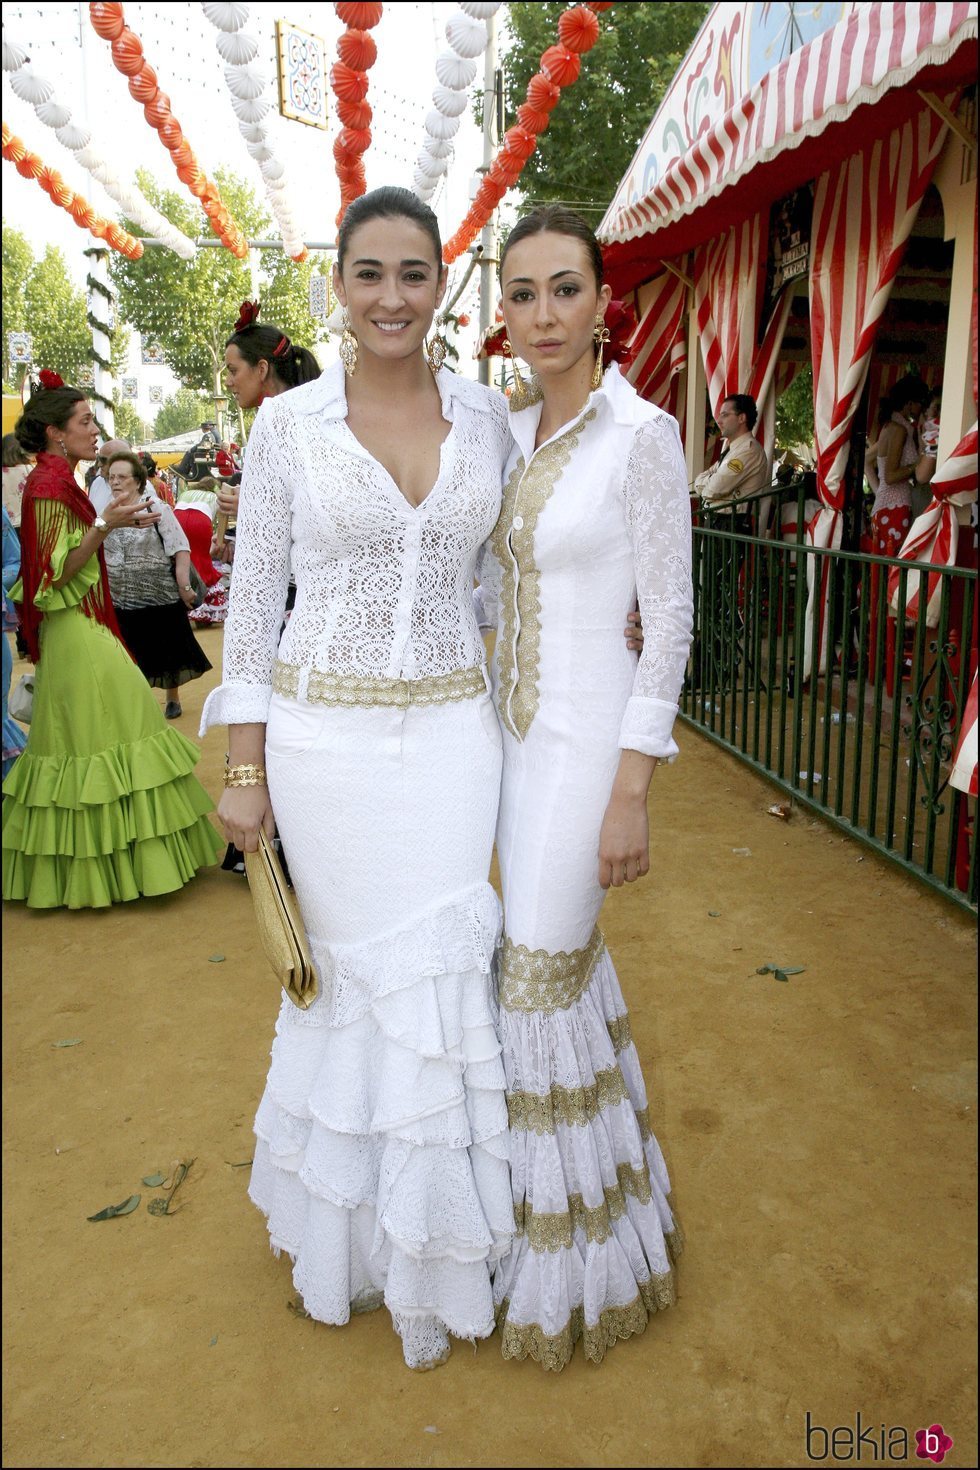 Vicky y Rocío Martín Berrocal en la Feria de Sevilla de 2006